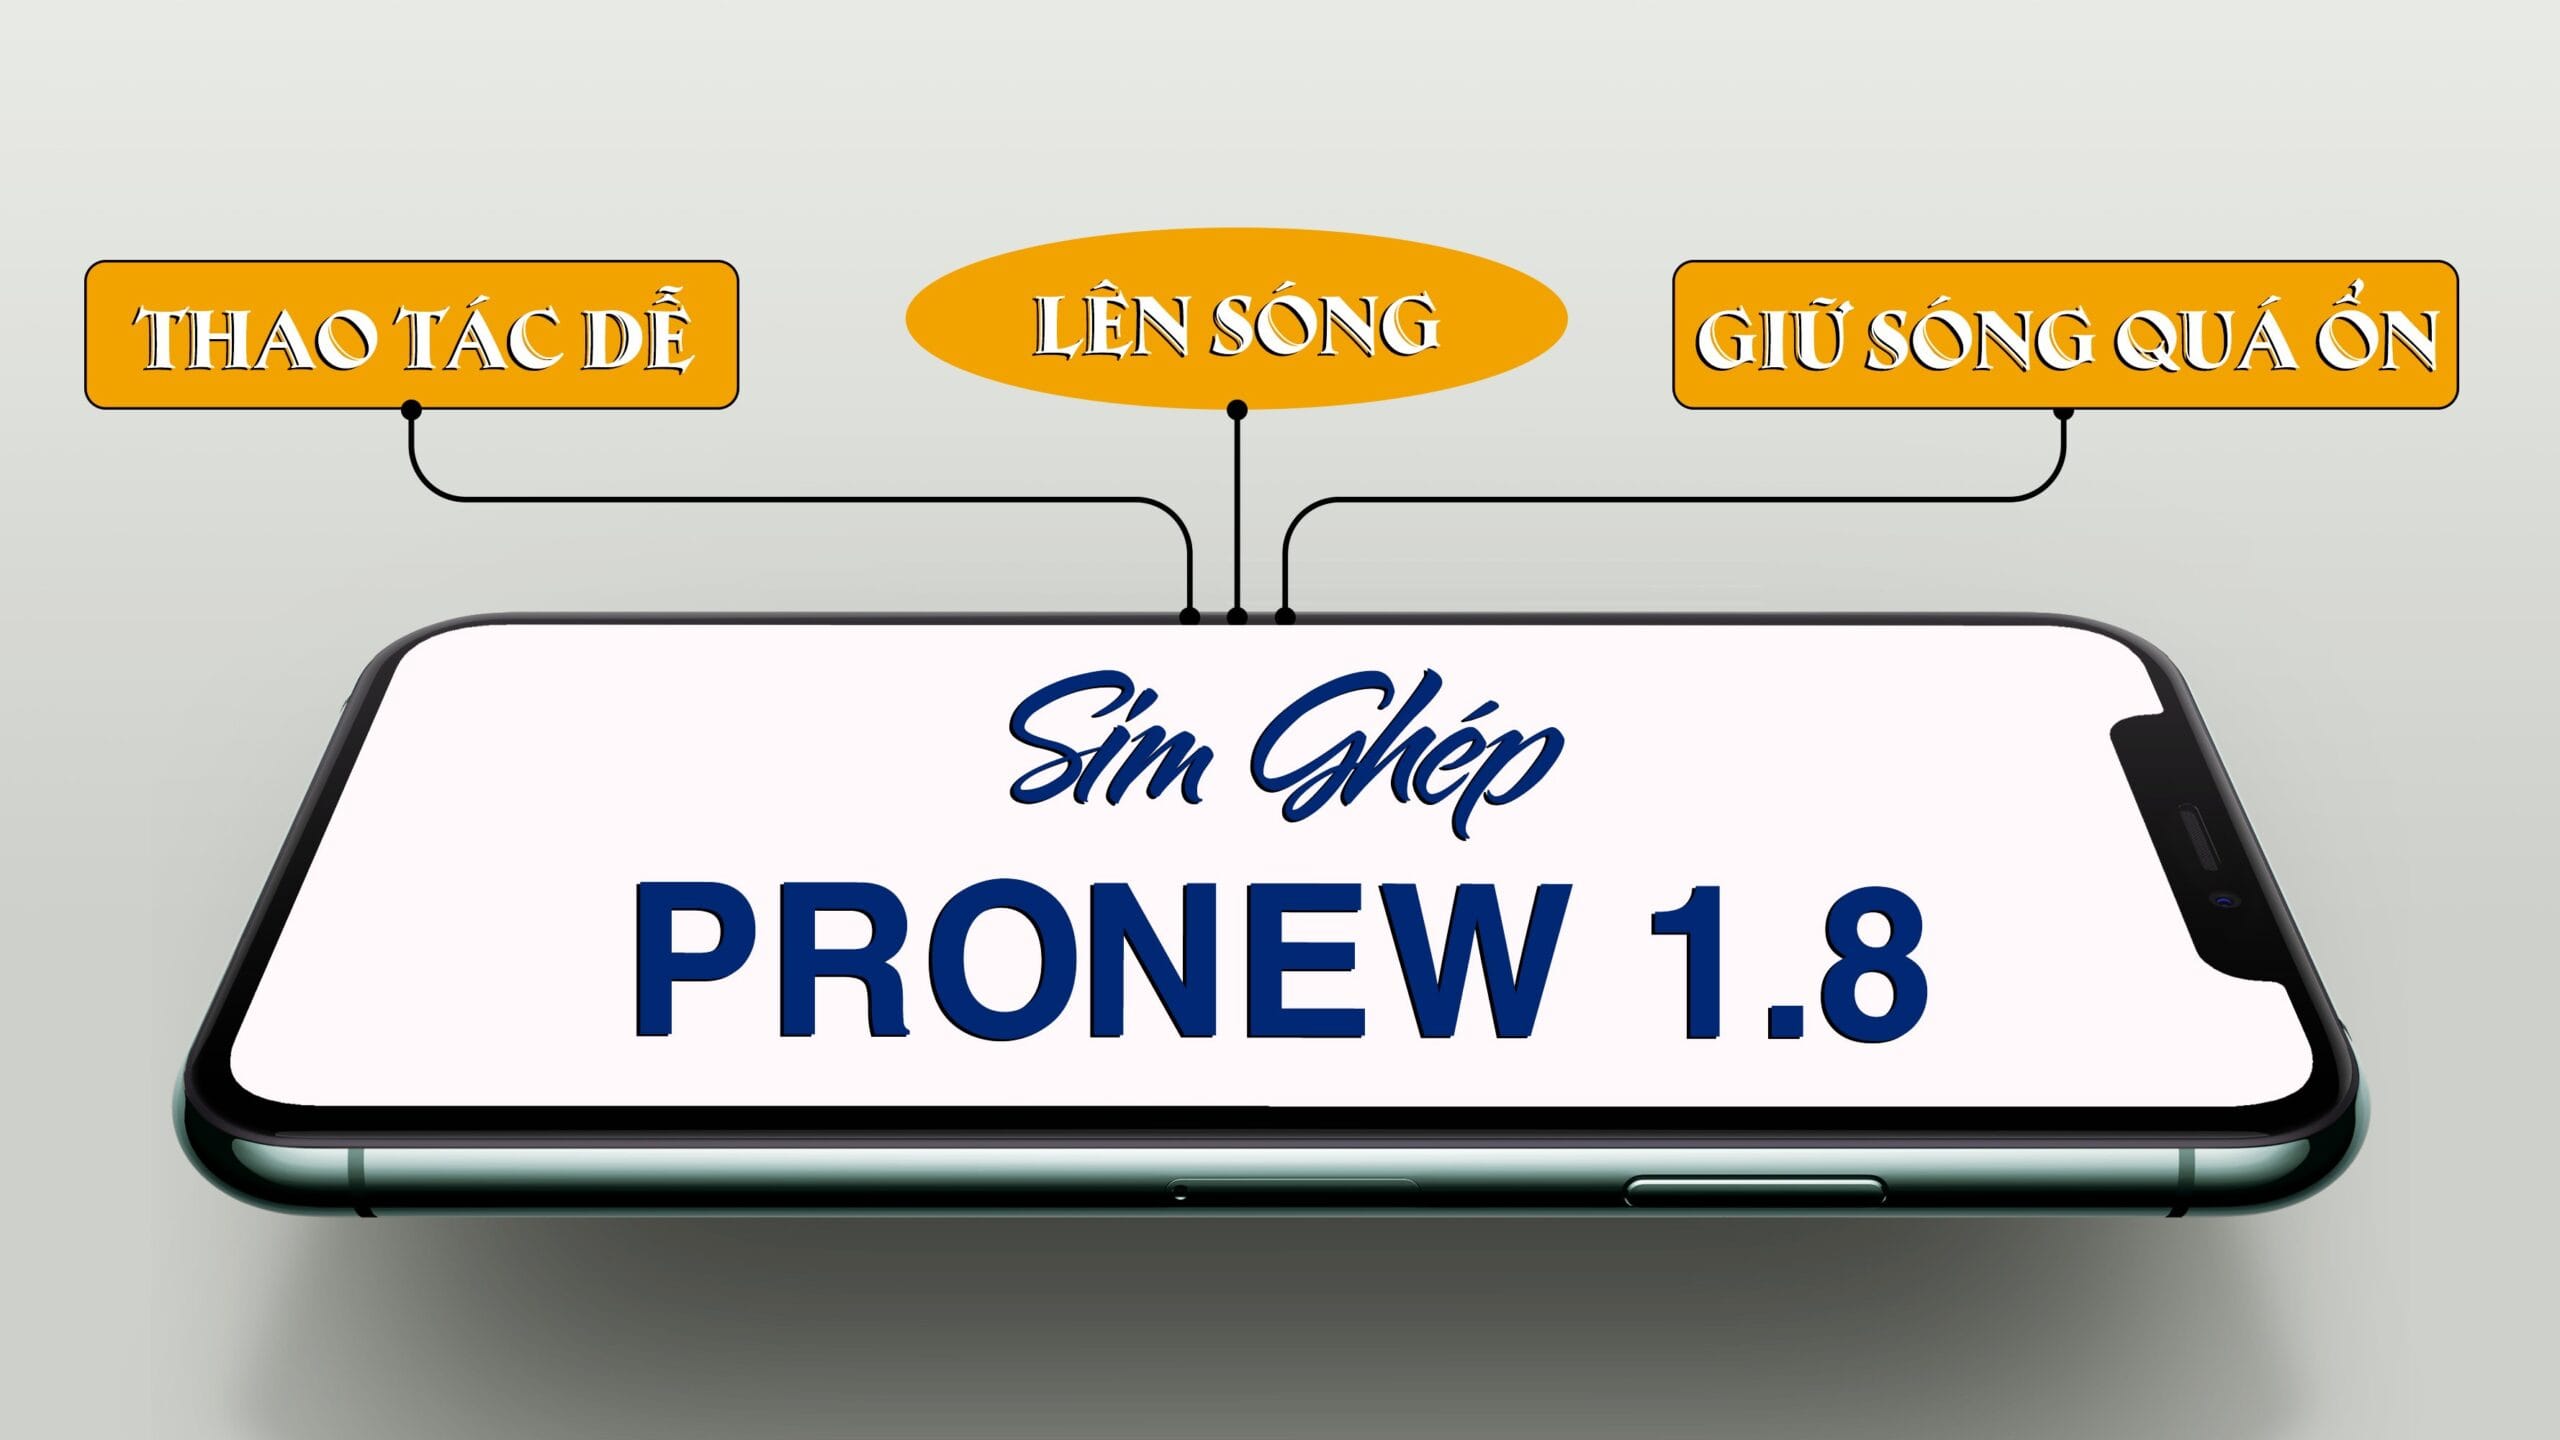 Sim ghép ProNew 1.8 thao tác dễ, lên sóng, giữ sóng quá ổn